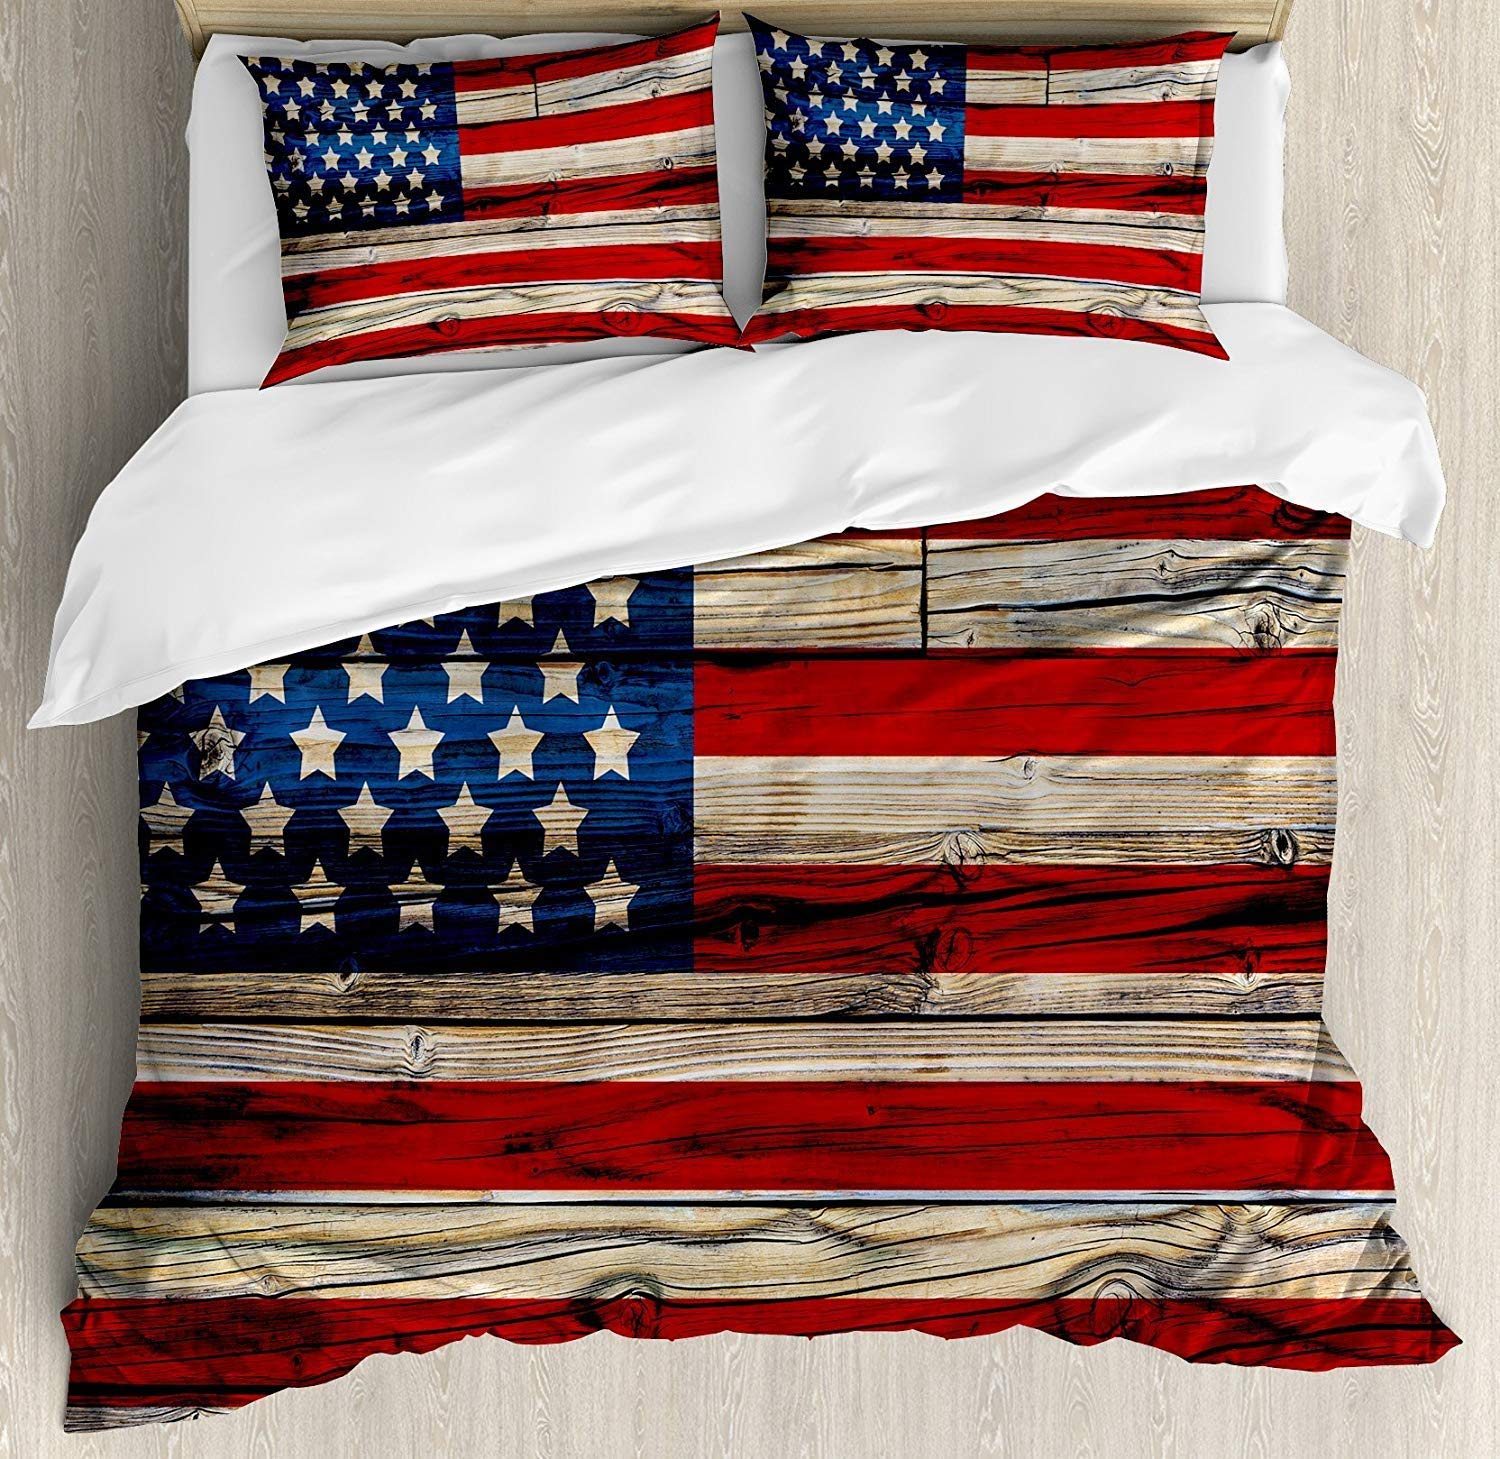 USA Comforter